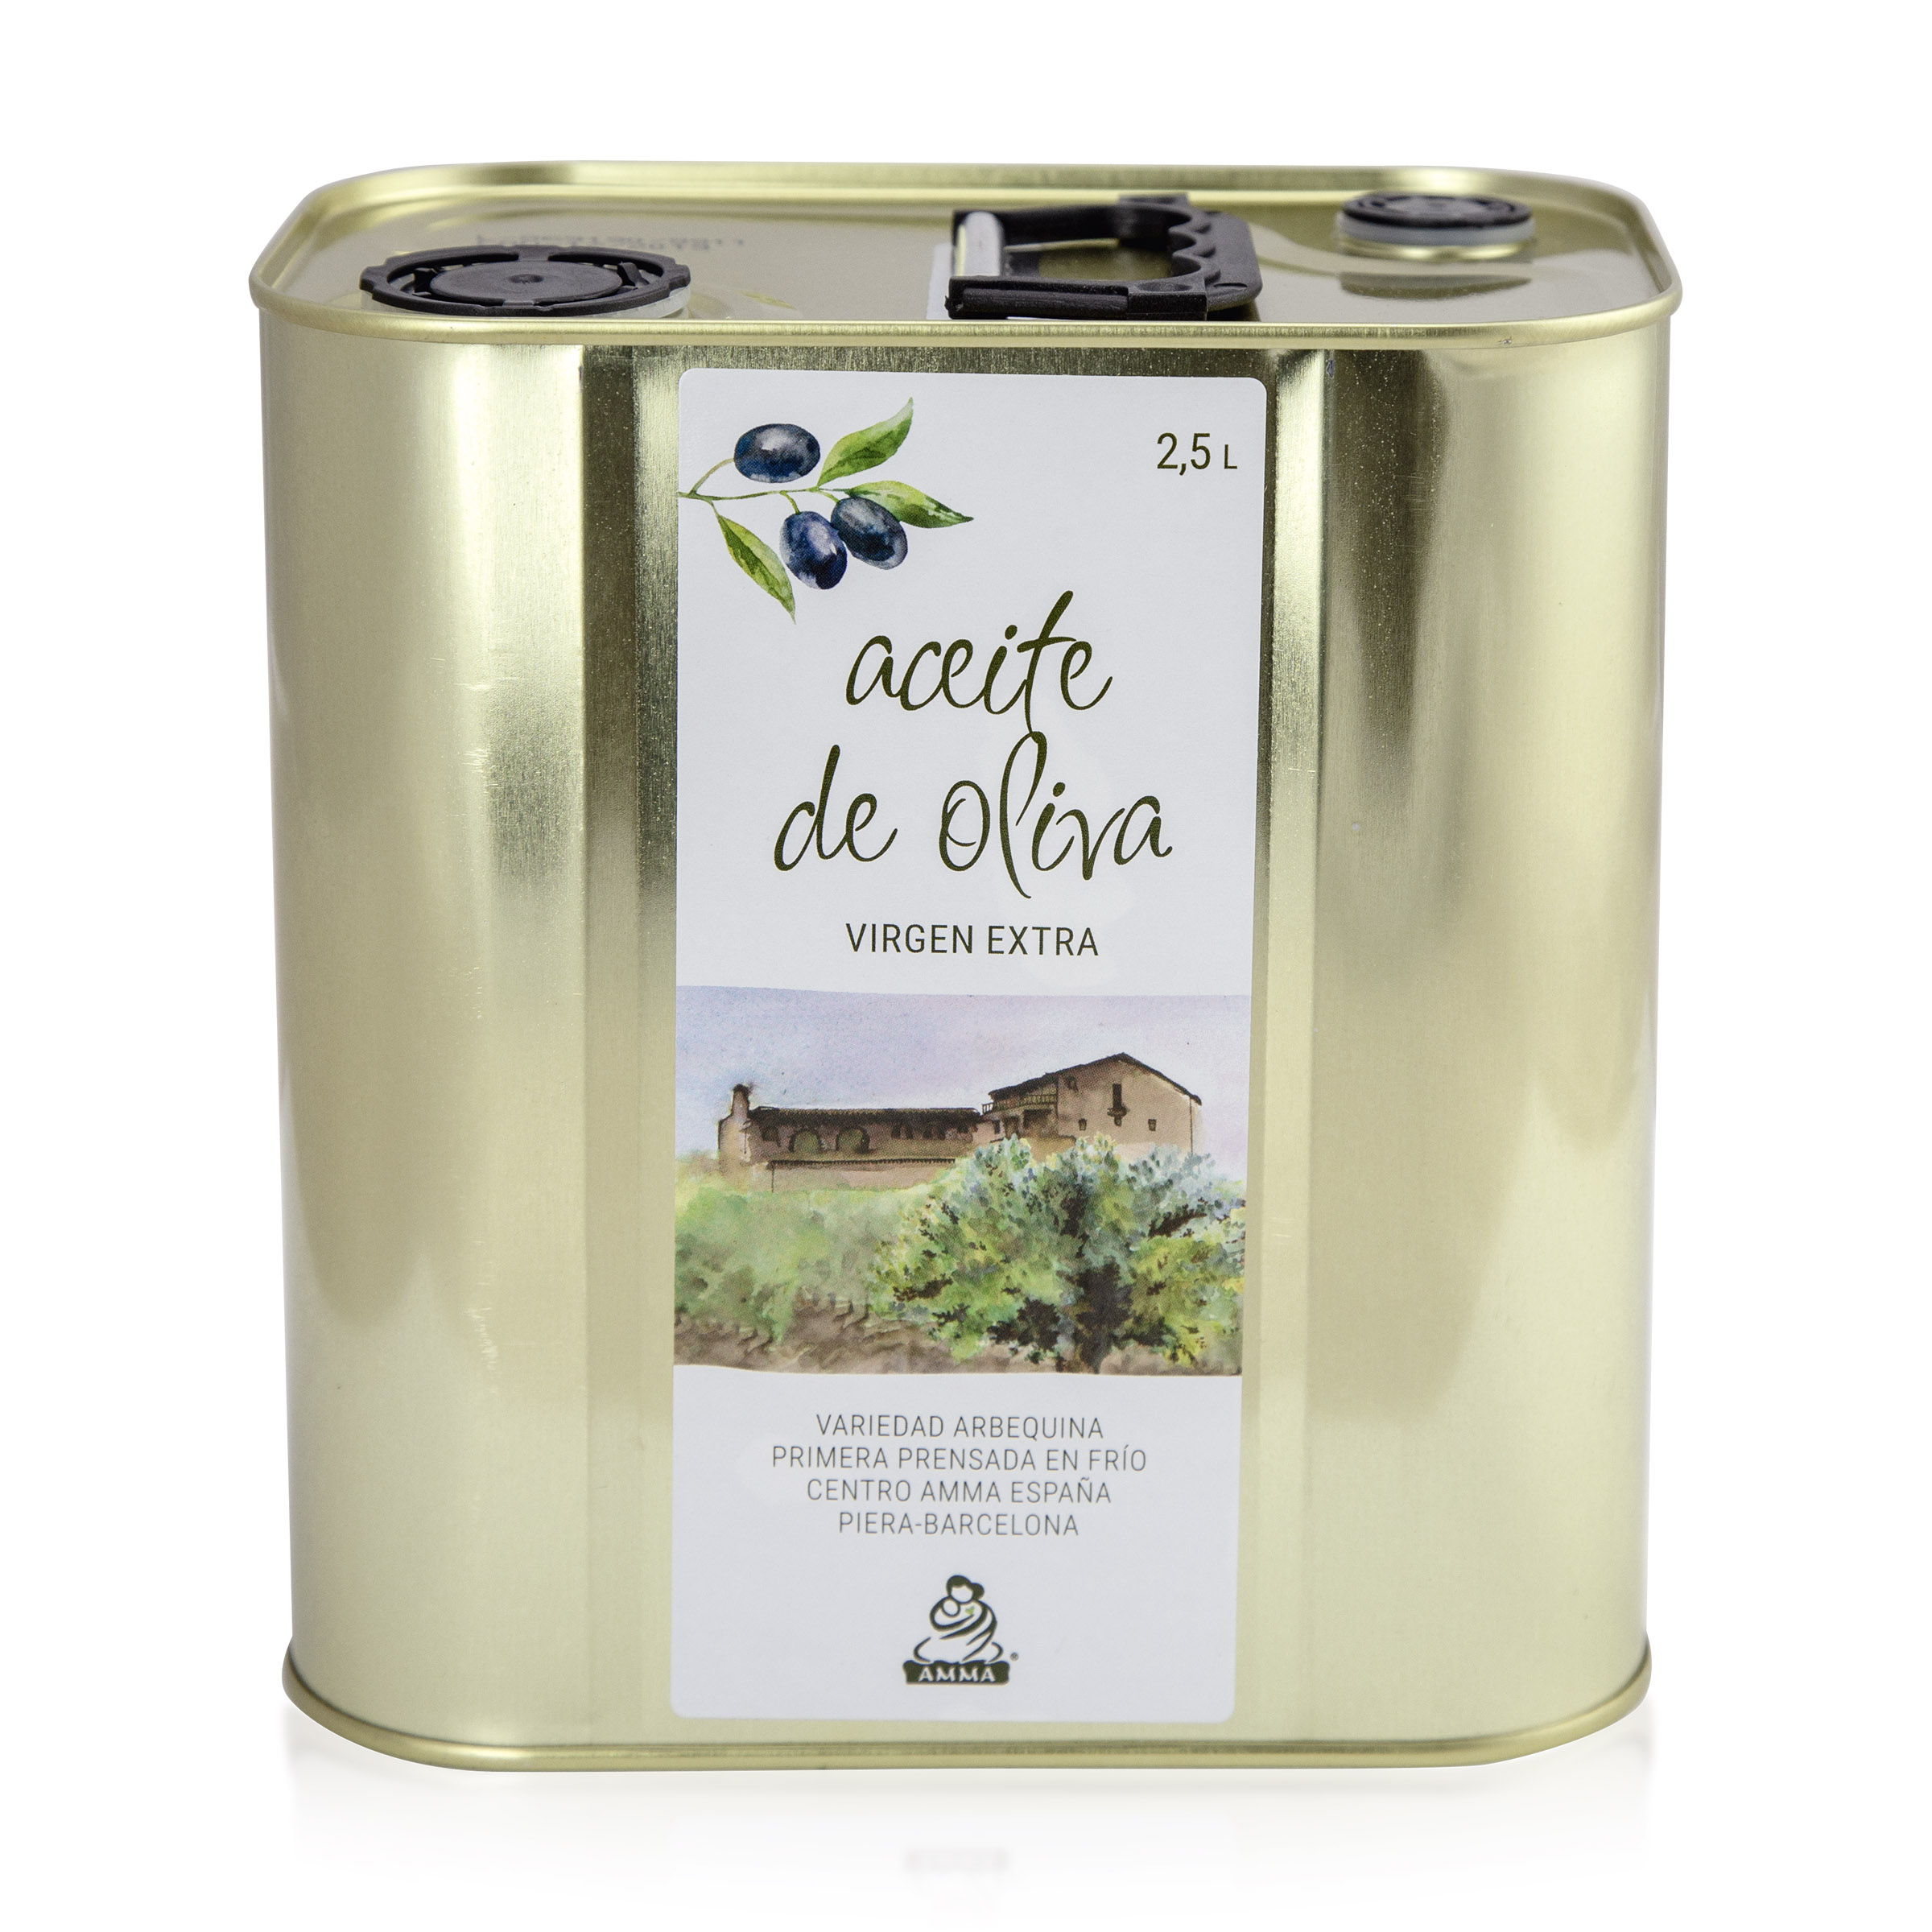 Spanish Virgin Olive Oil Extra 2,5 Liter 